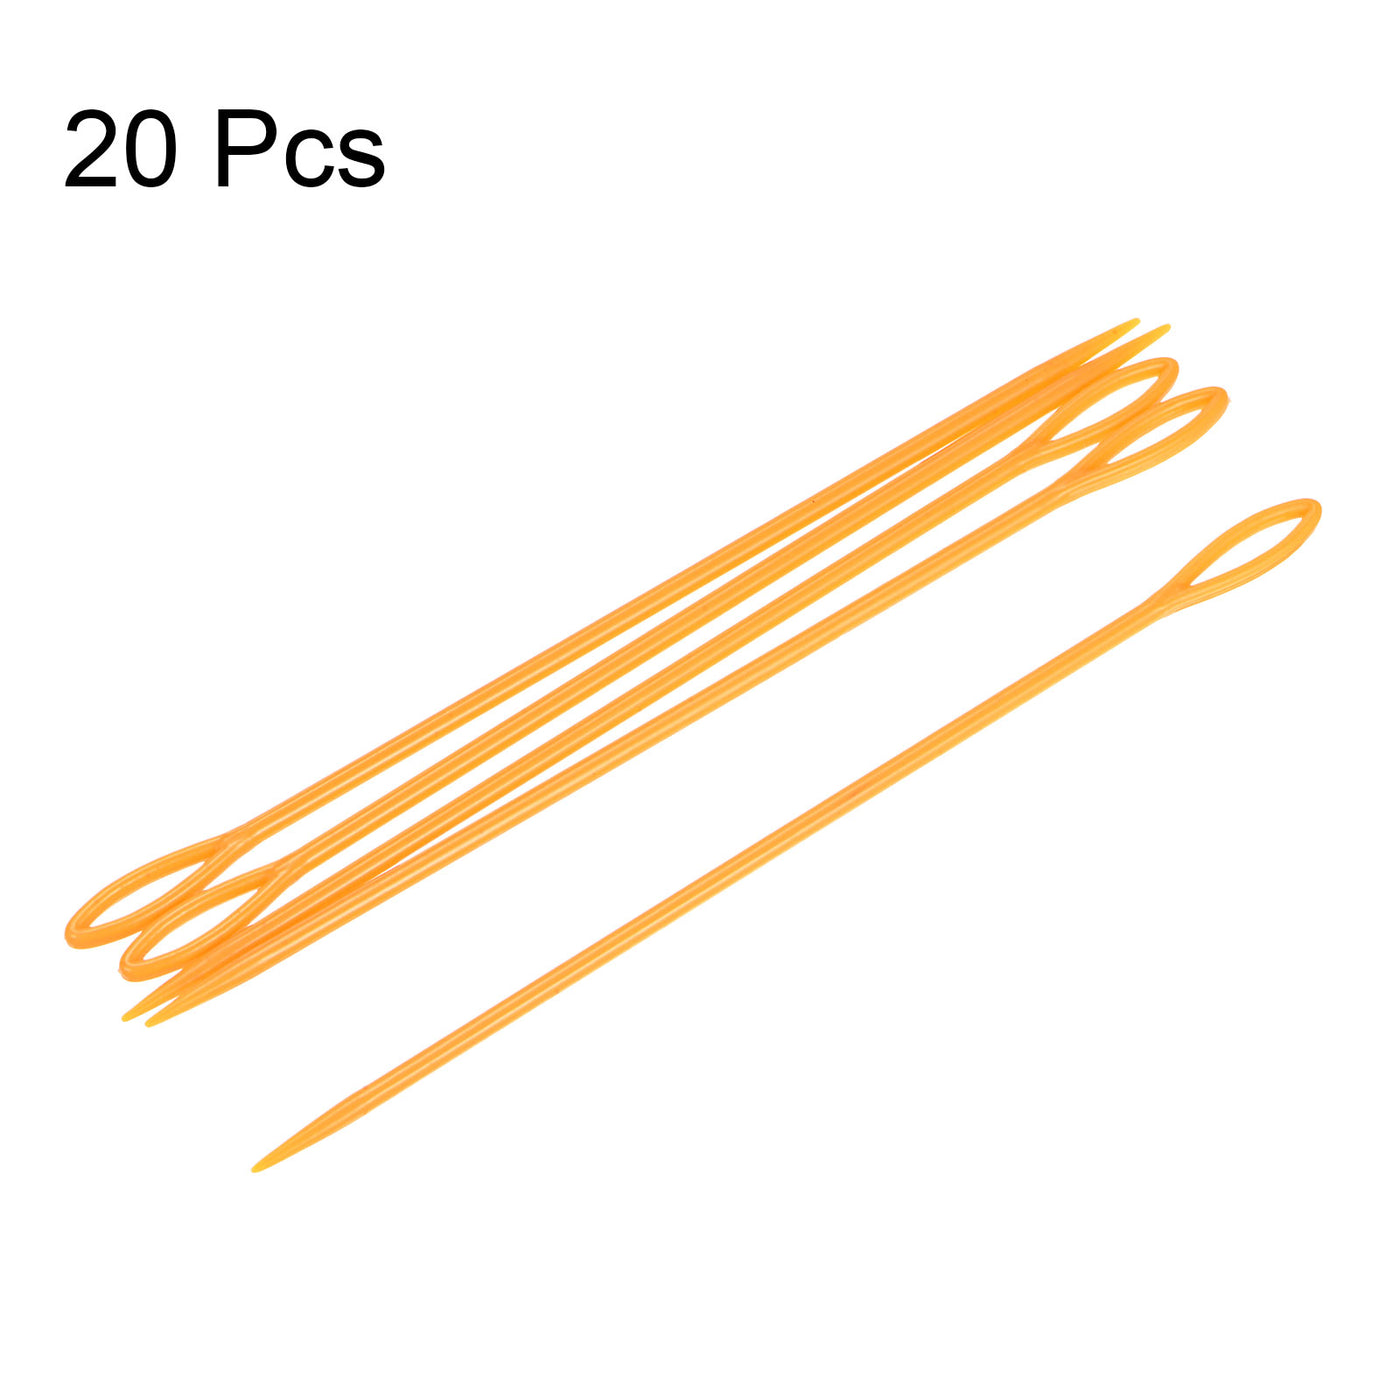 Harfington 20pcs Plastic Sewing Needles, 15cm Large Eye Blunt Learning Needles, Orange